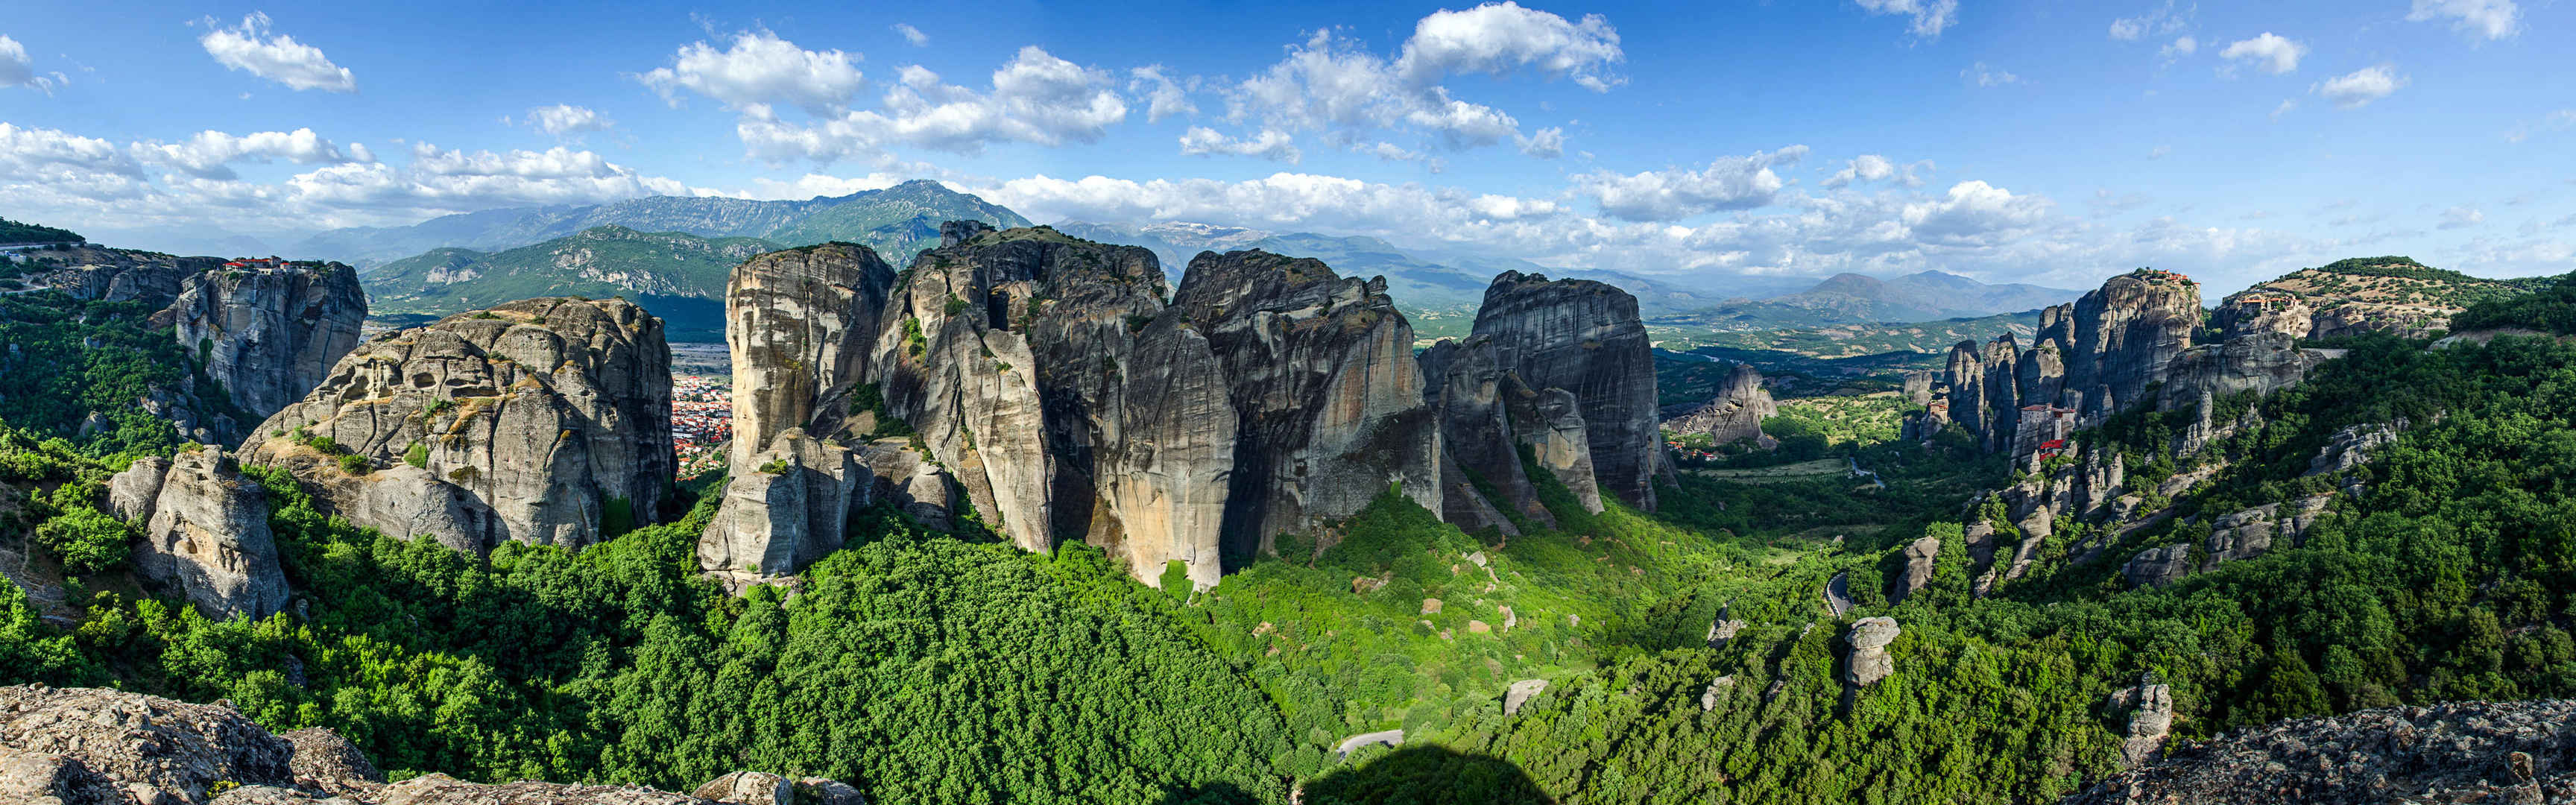 微软官方win8主题 石林全景壁纸图片